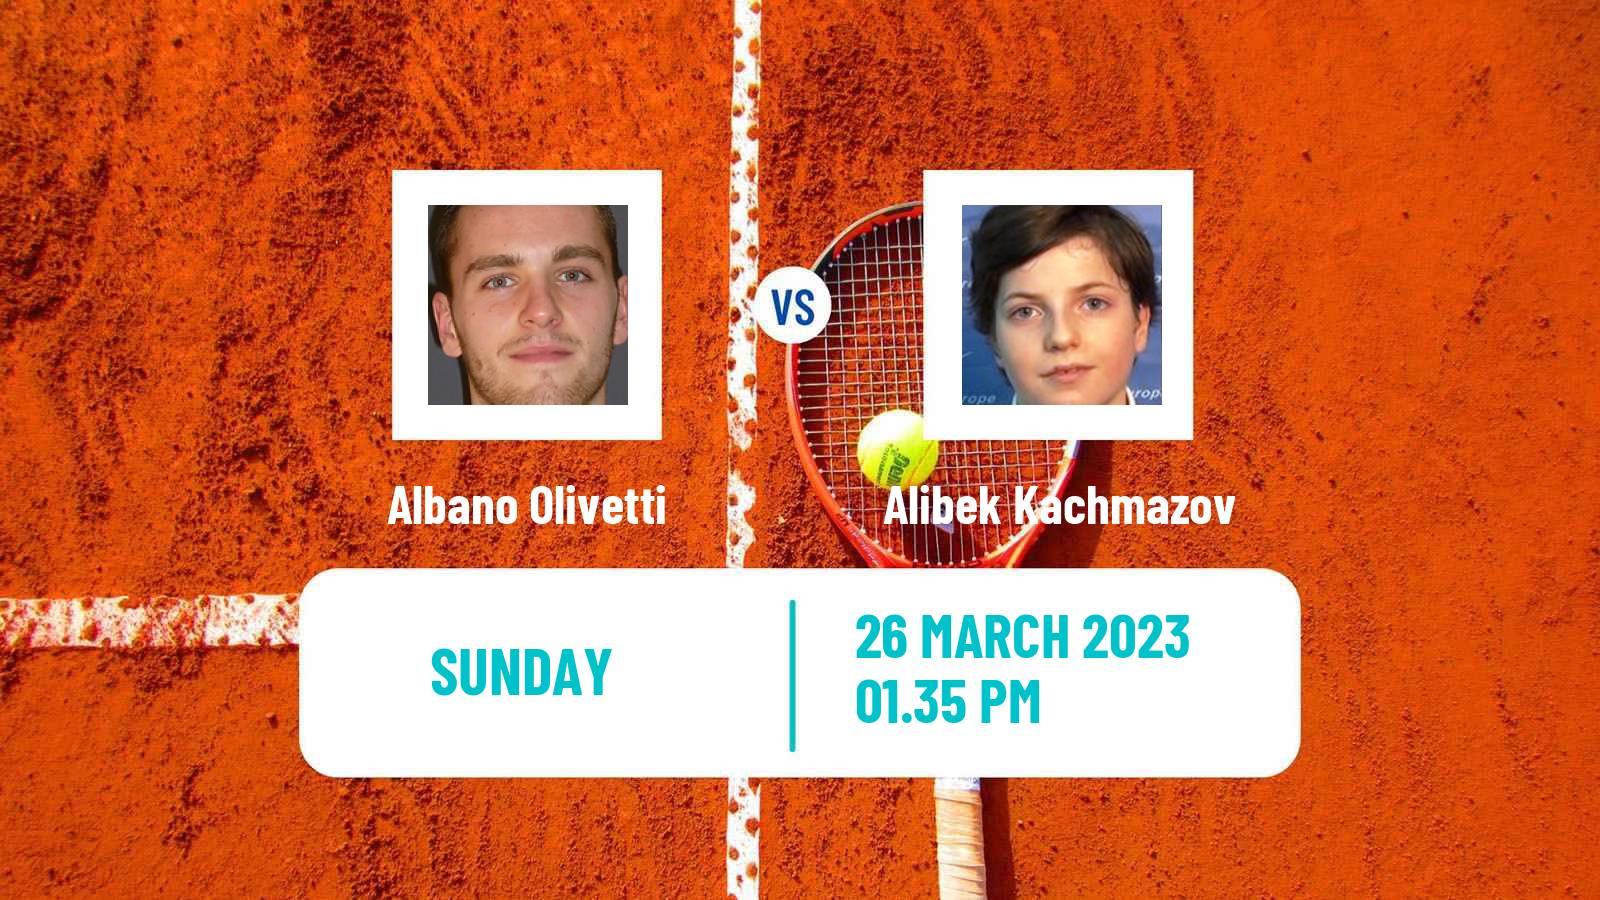 Tennis ATP Challenger Albano Olivetti - Alibek Kachmazov